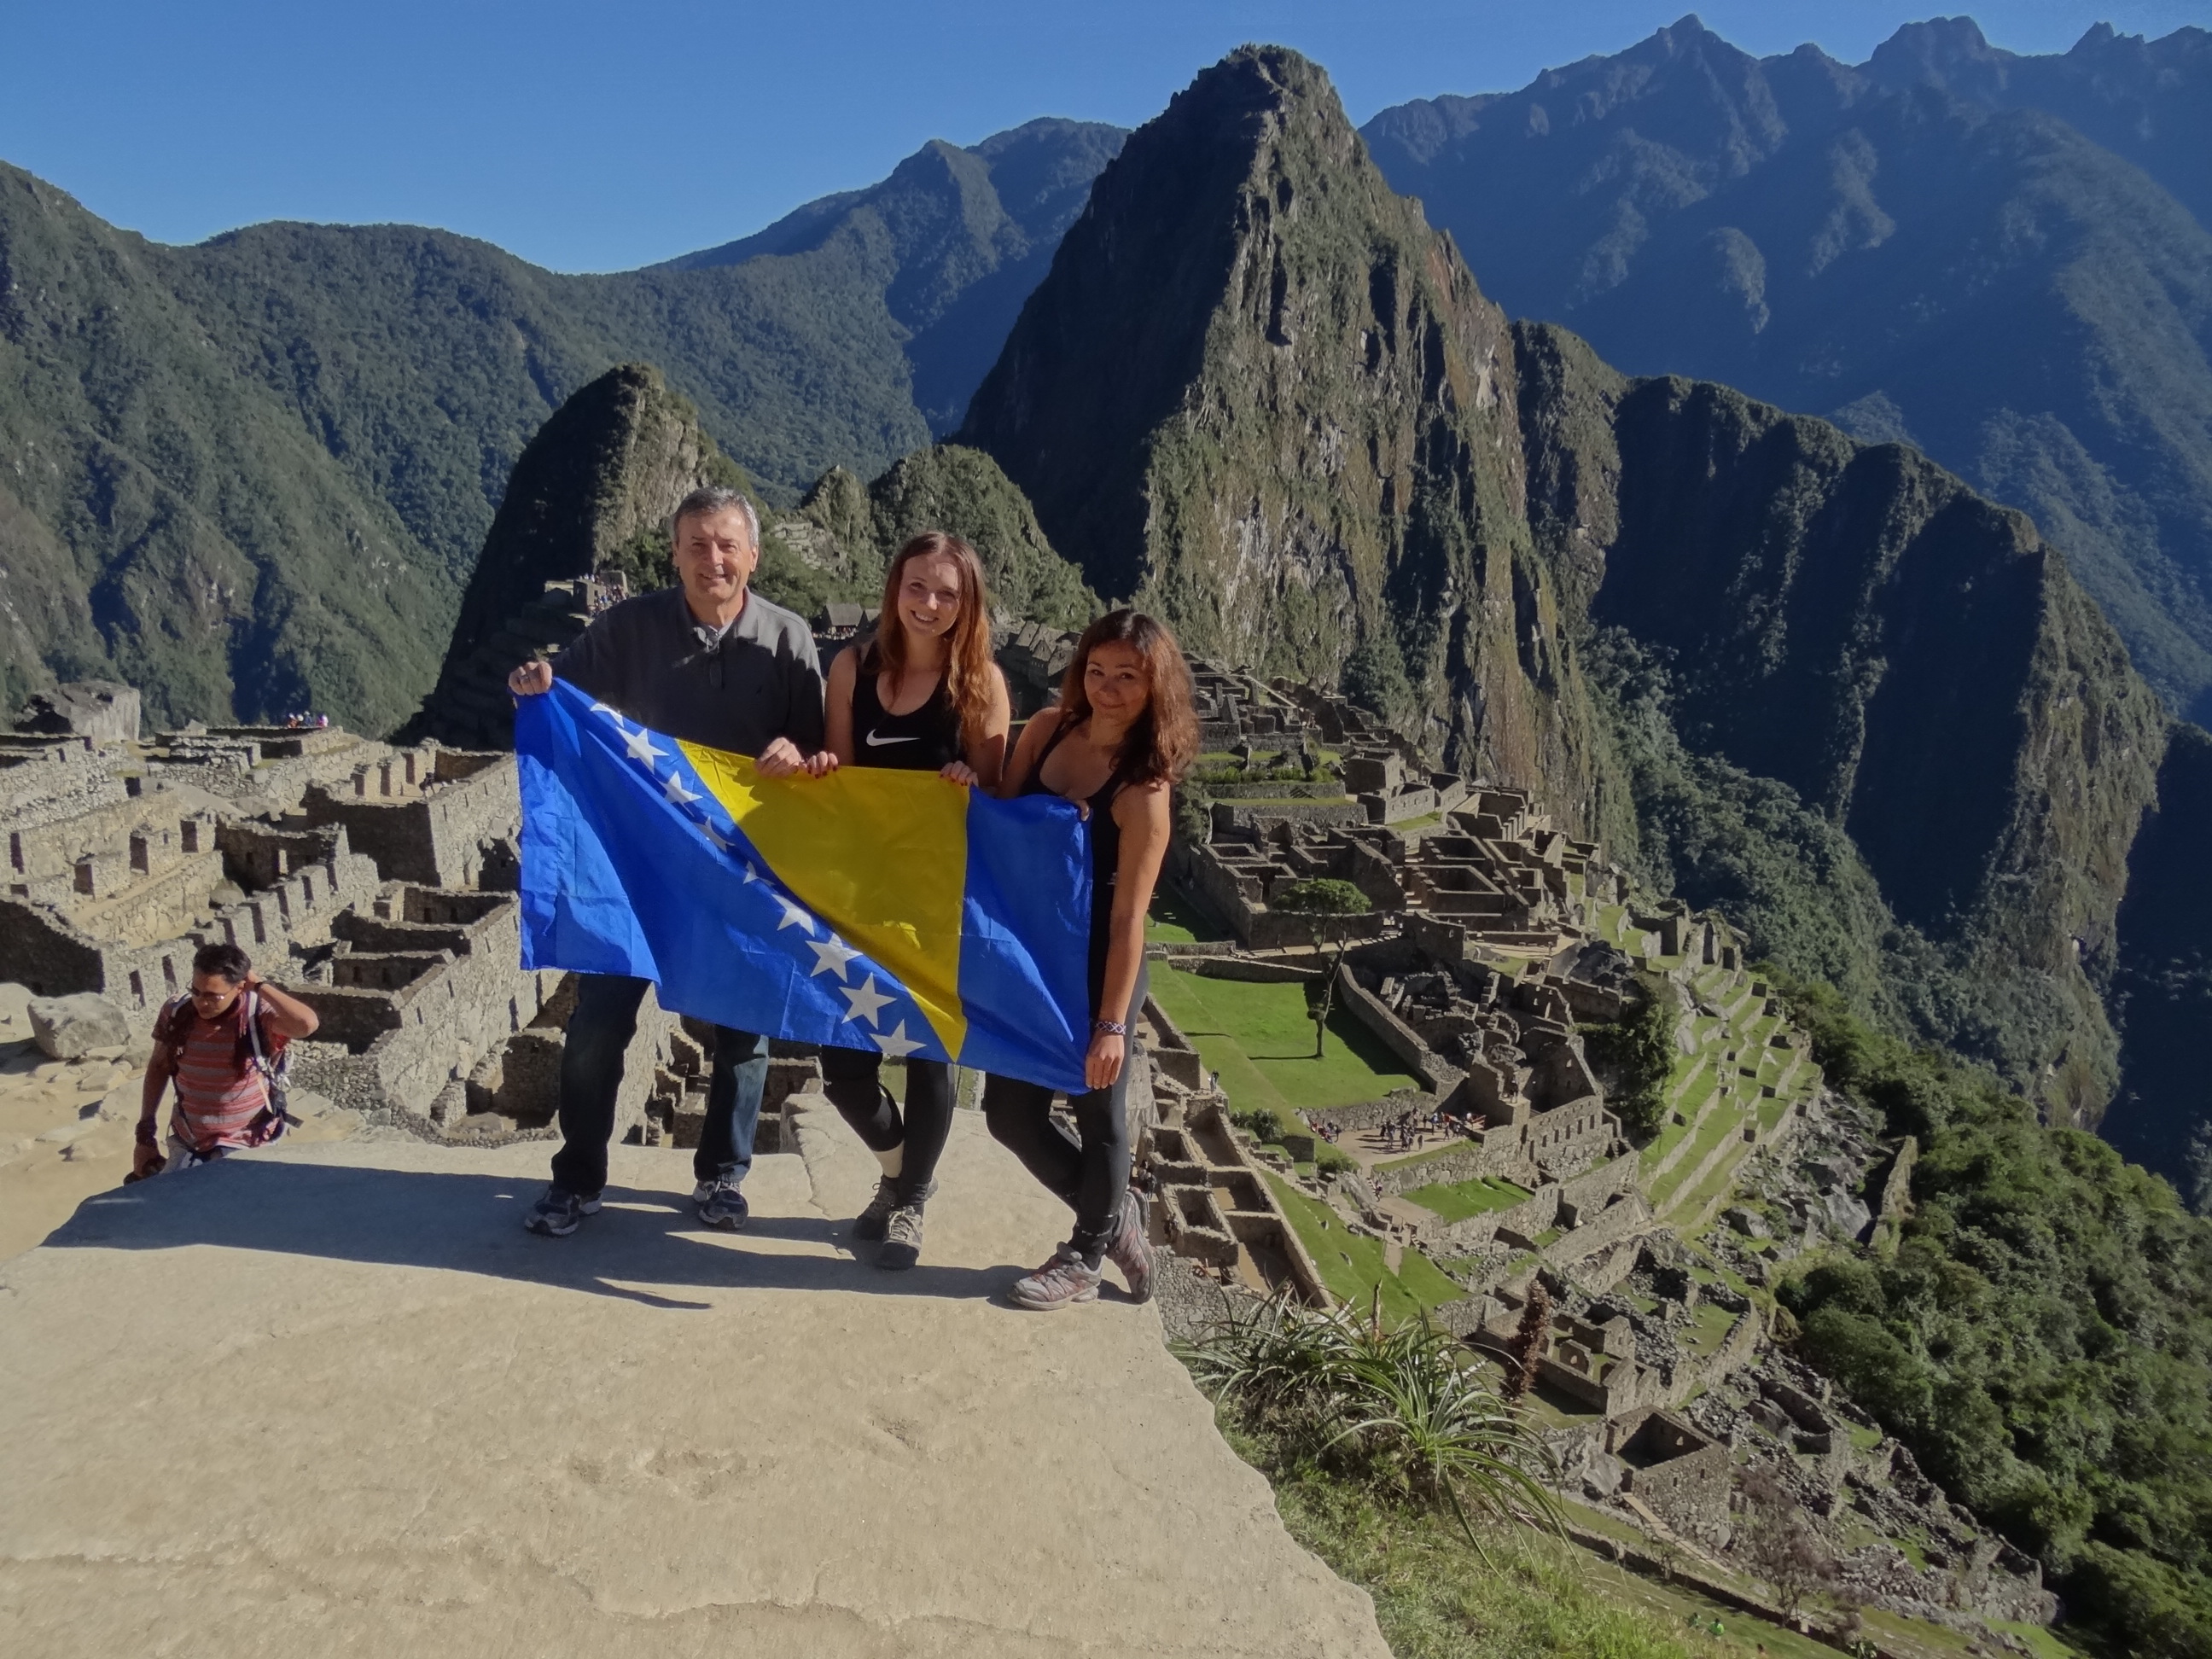 Bosnians united at Machu Picchu